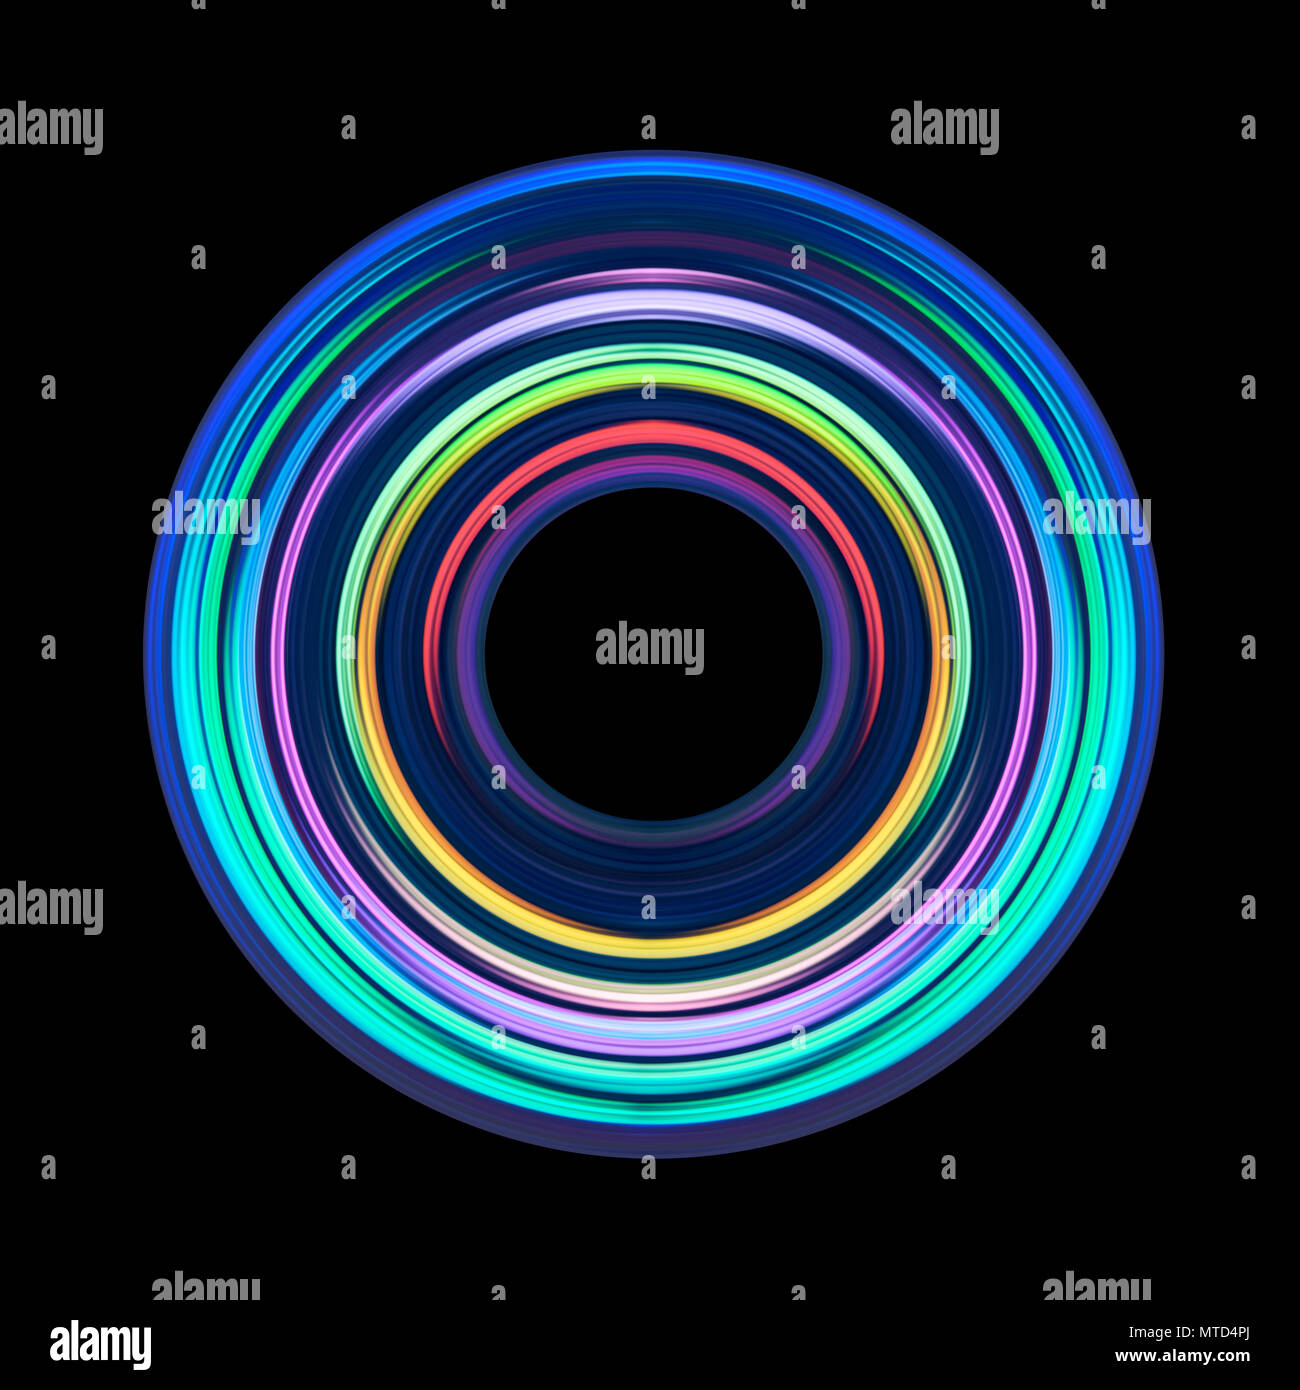 Kreisförmige abstrakte holographische Spektrum Artwork. Eine bunte Kulisse in Neon Circle Lines. Für kreatives Design, CD-Cover, Poster, Plakat, Buch-, Druck-, Geschenk Stockfoto